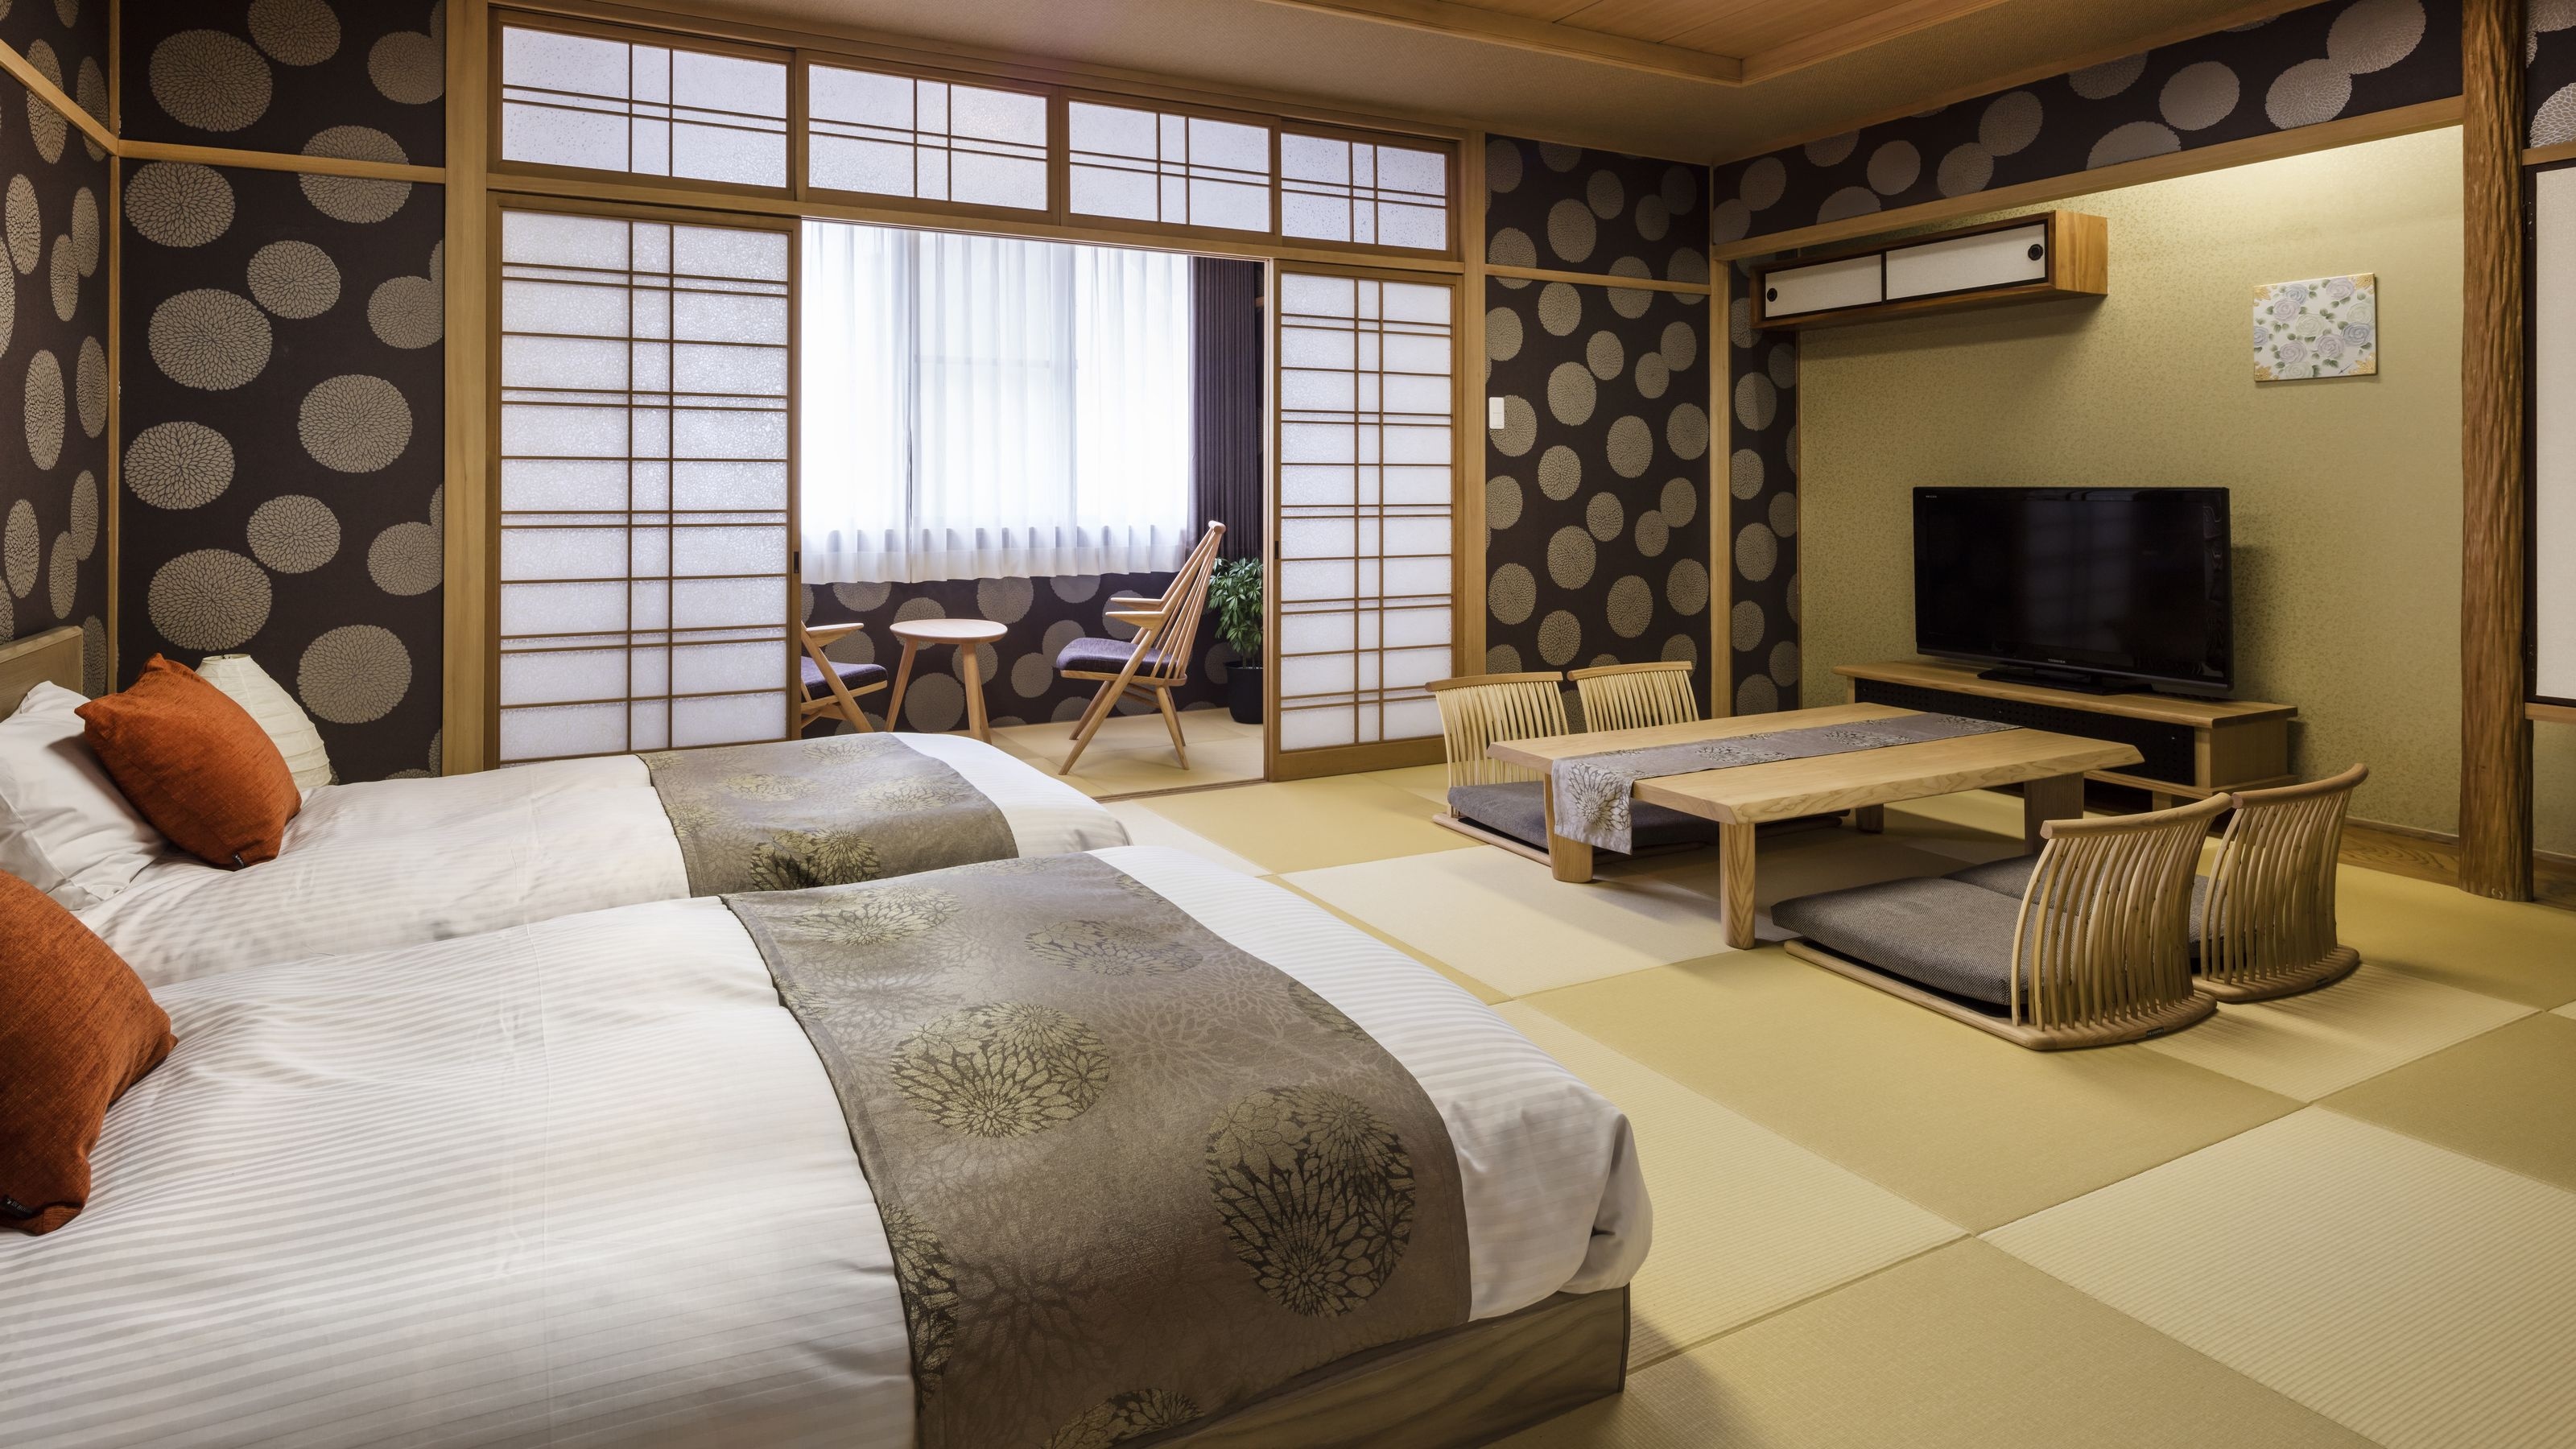 DX 日式房间图片 ◆ 使用两张单人床 ◆ 房间宽敞。